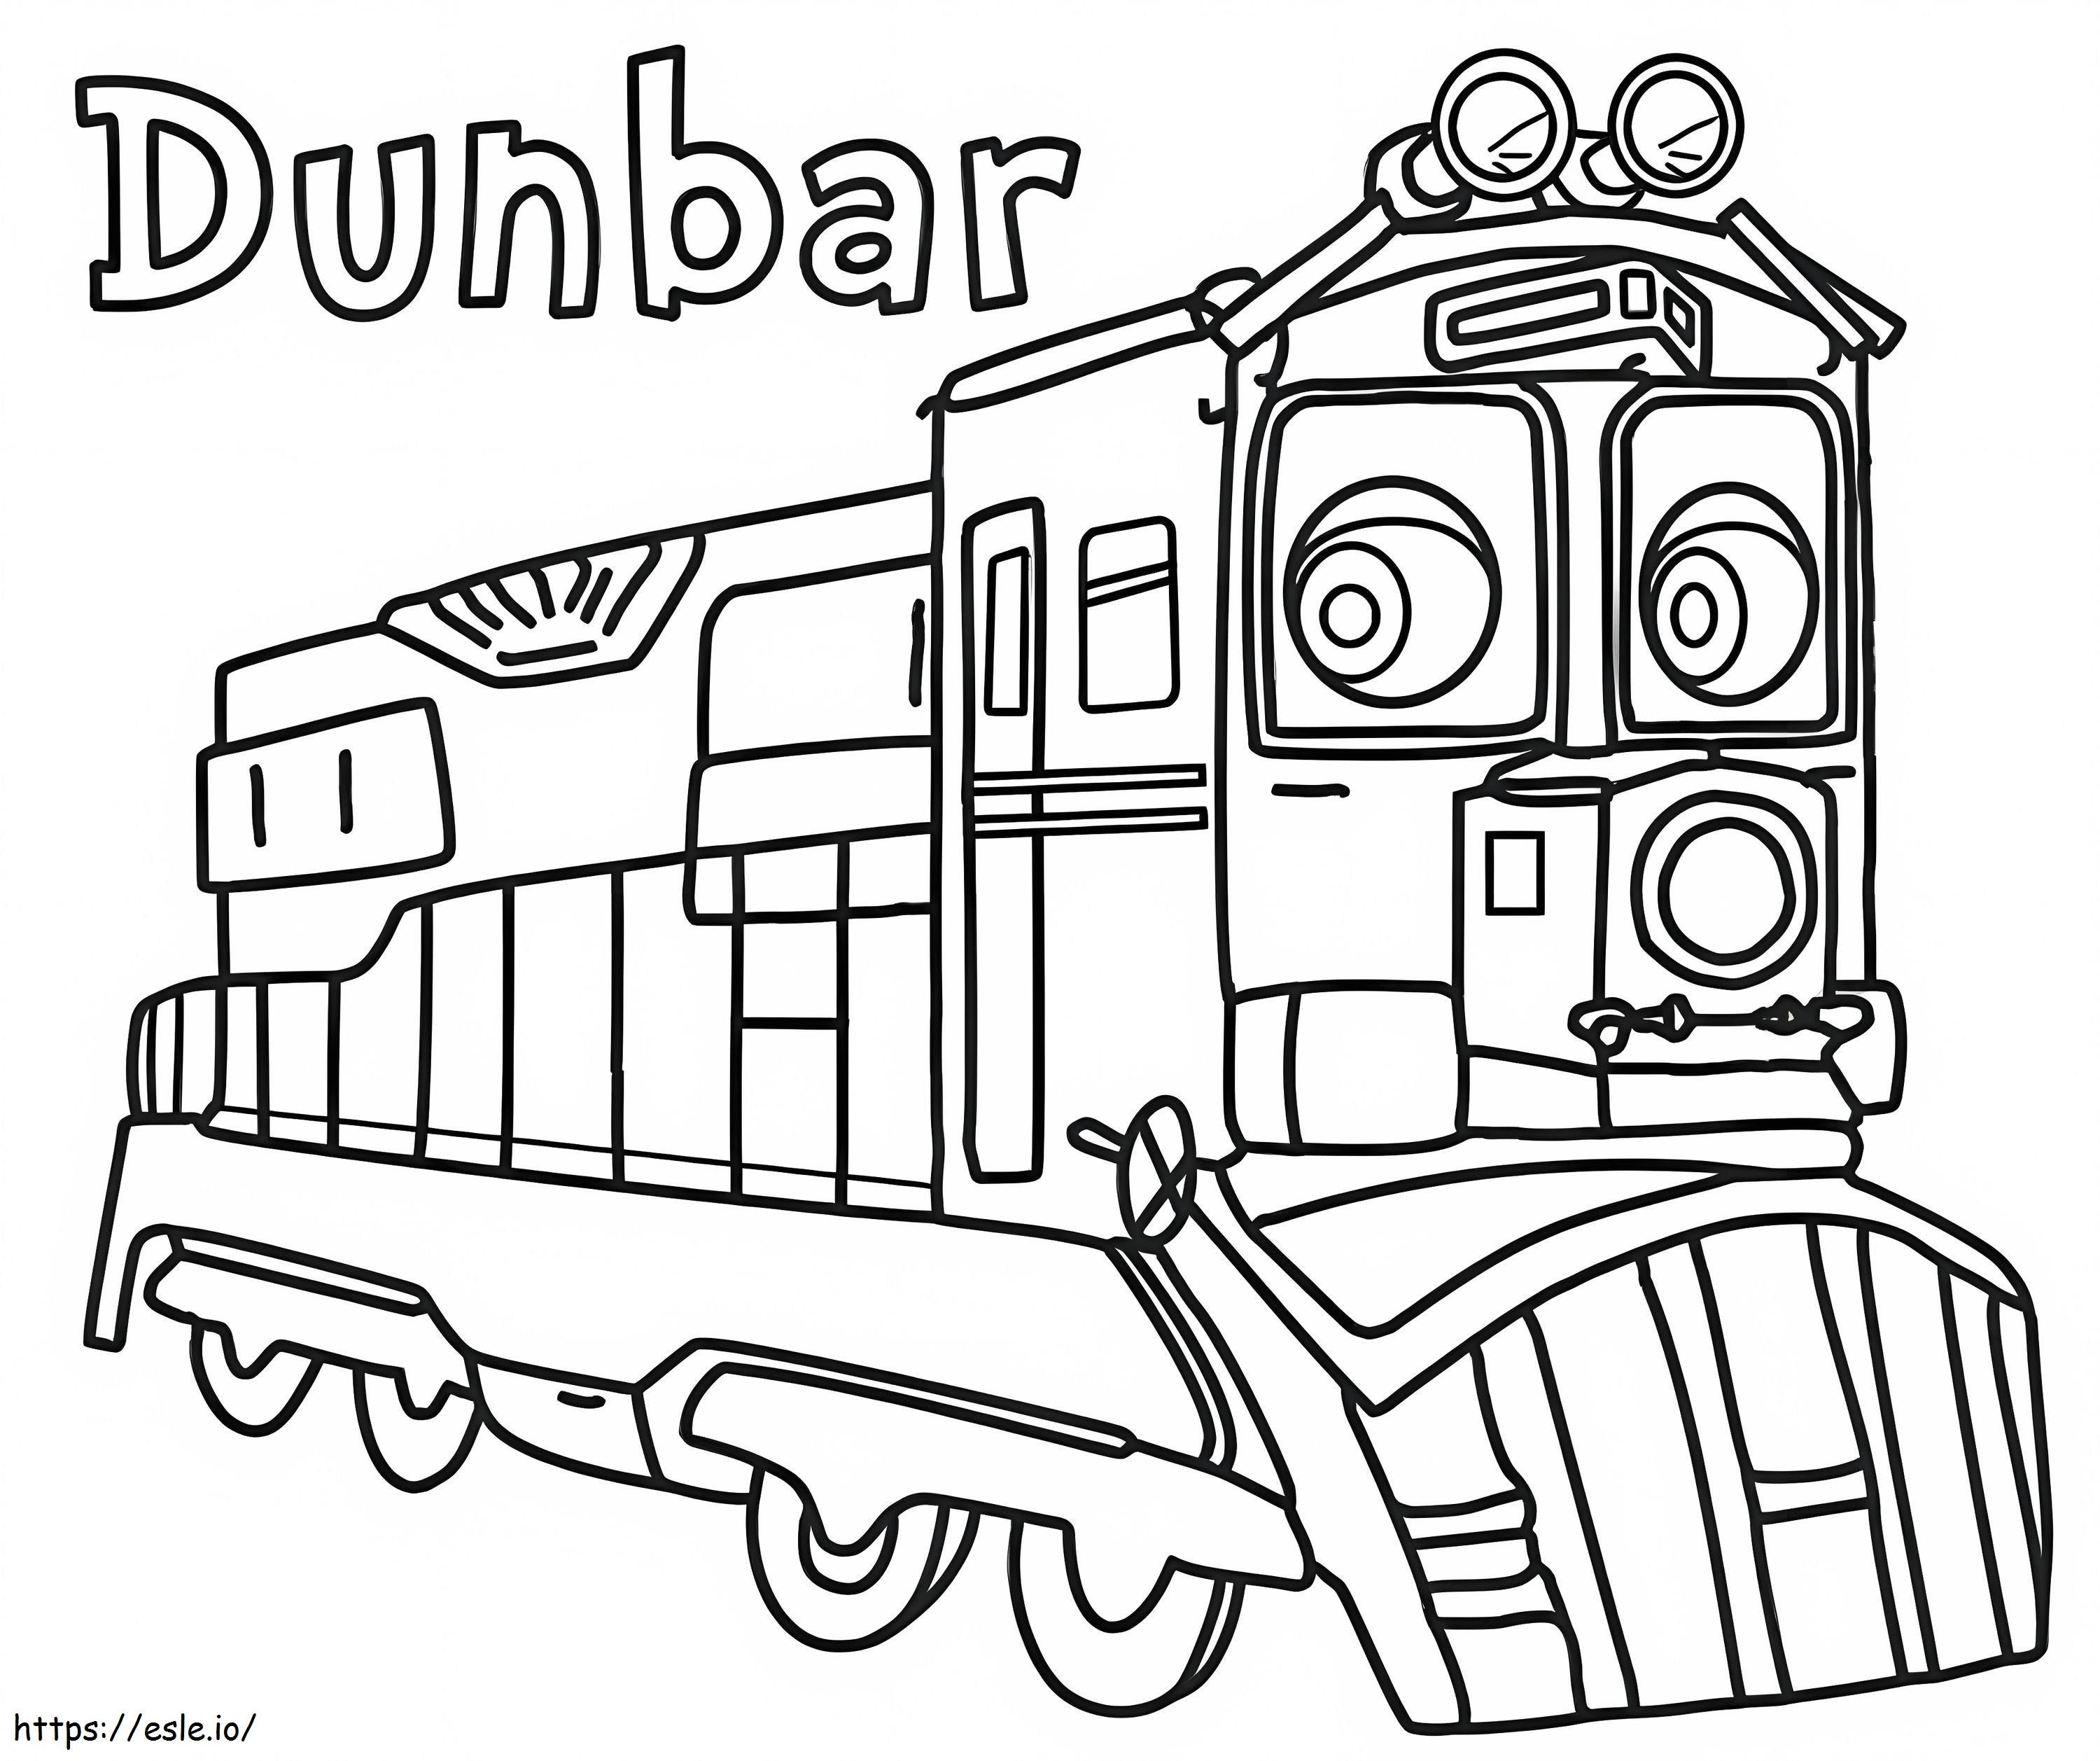 Dunbar de Chuggington para colorir